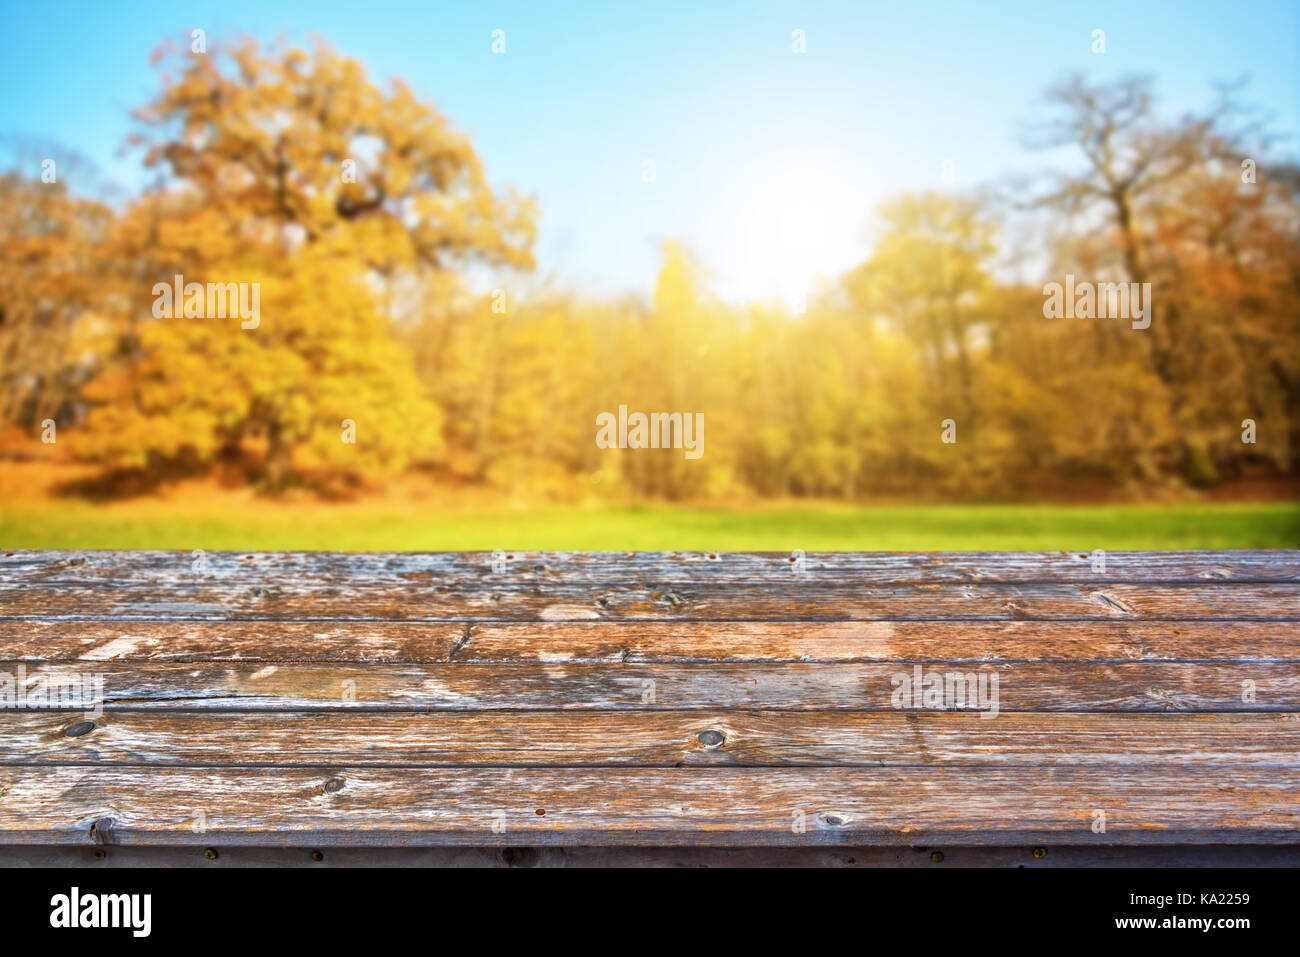 Leere Holz- Tischplatte, sonnigen Wald im Herbst Hintergrund, bereit für die Anzeige oder Montage ihrer Produkte zu verwenden Stockfoto